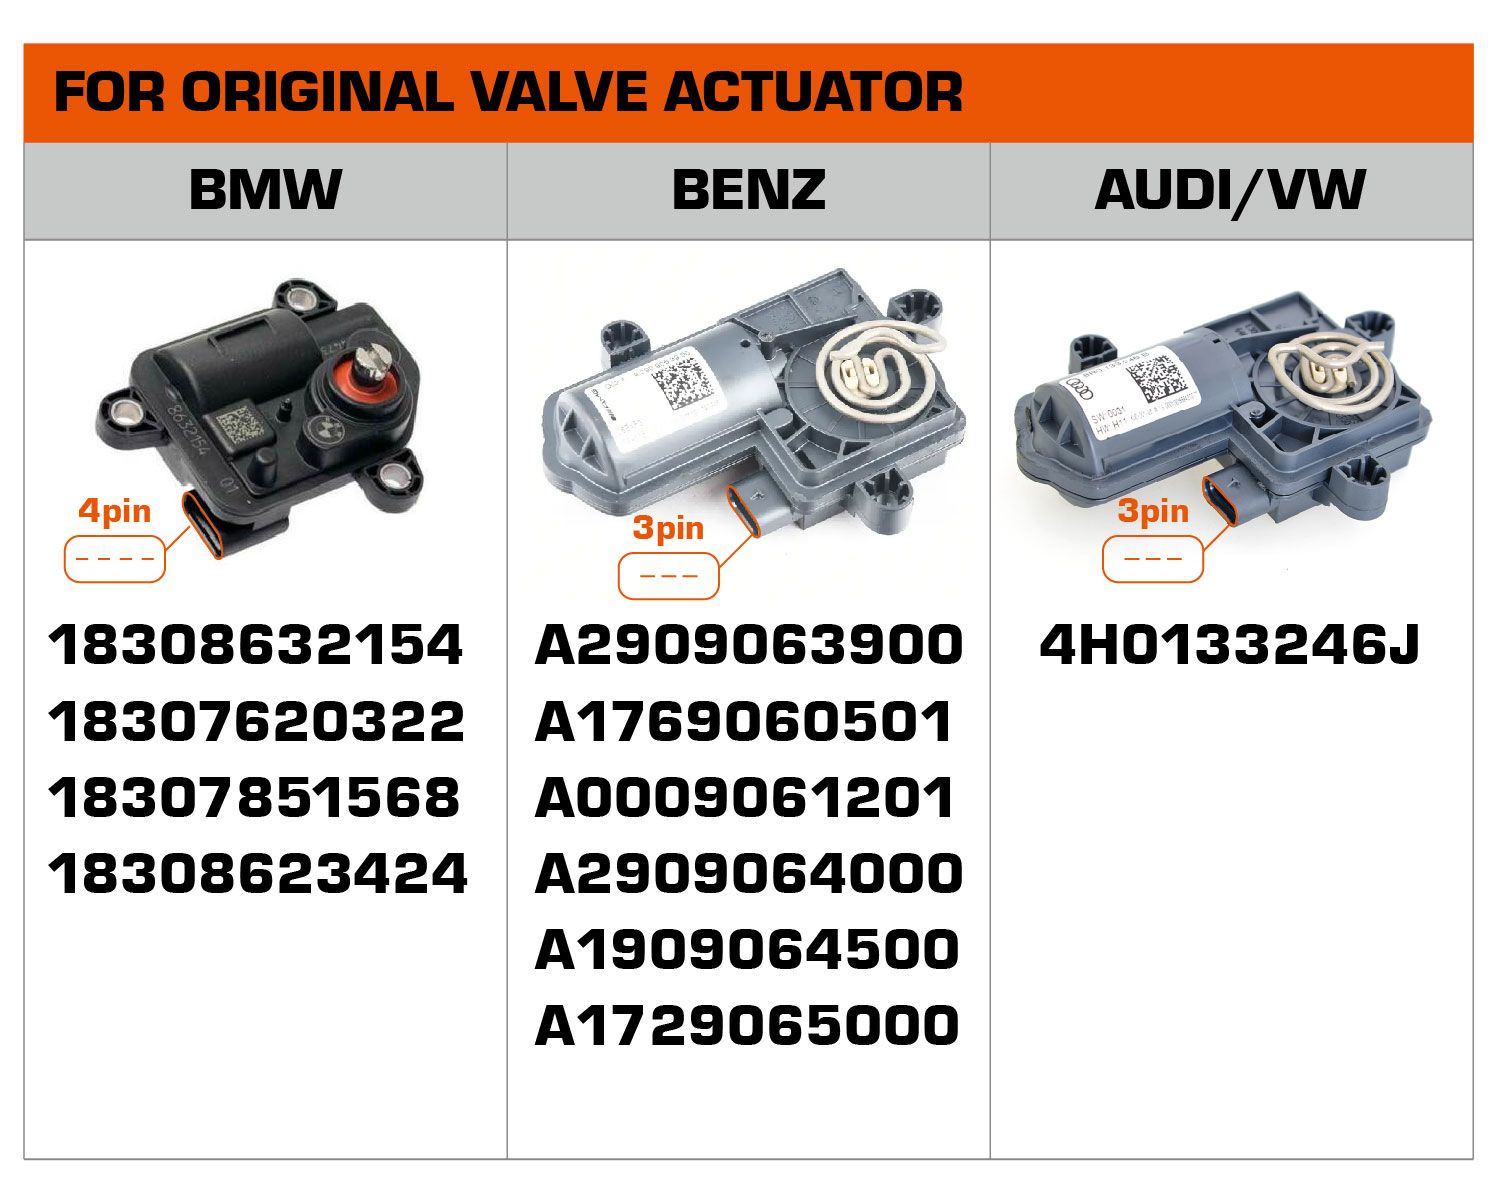 Números de peças para válvula original podem ser usados no escapamento modificado